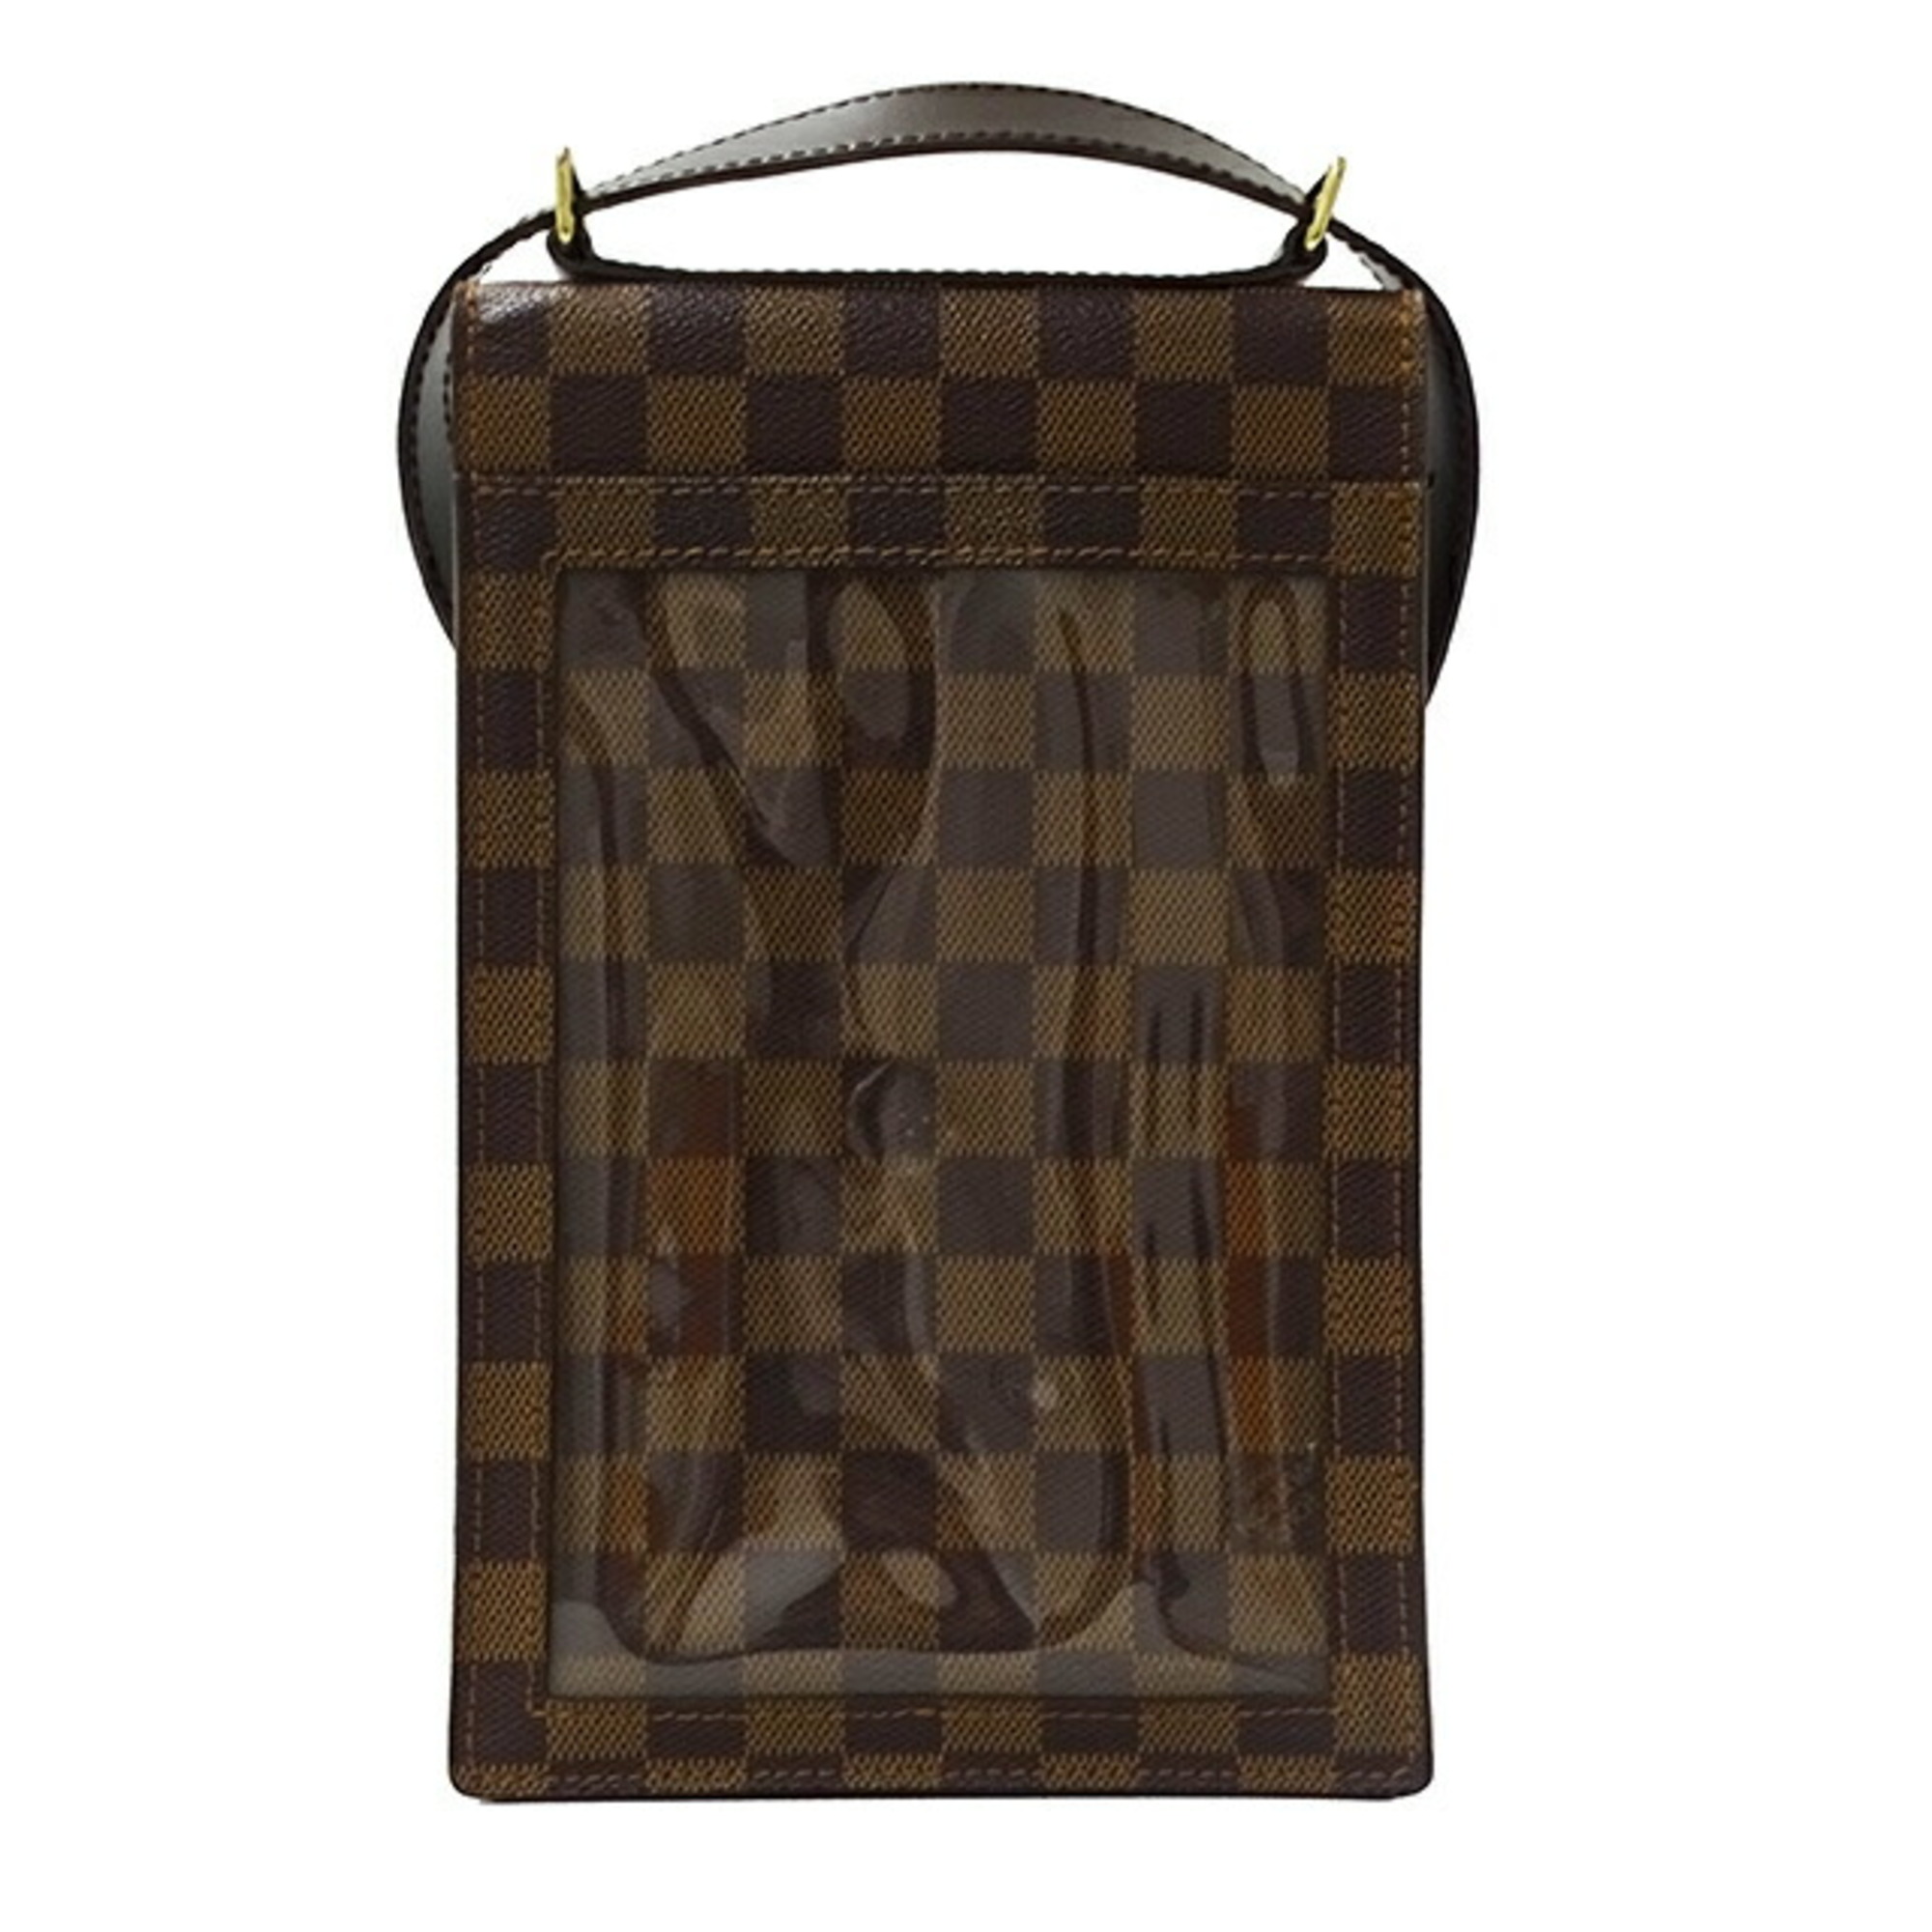 Louis Vuitton Damier Bag for Women and Men Shoulder Portobello Ebene Brown N45271 Compact